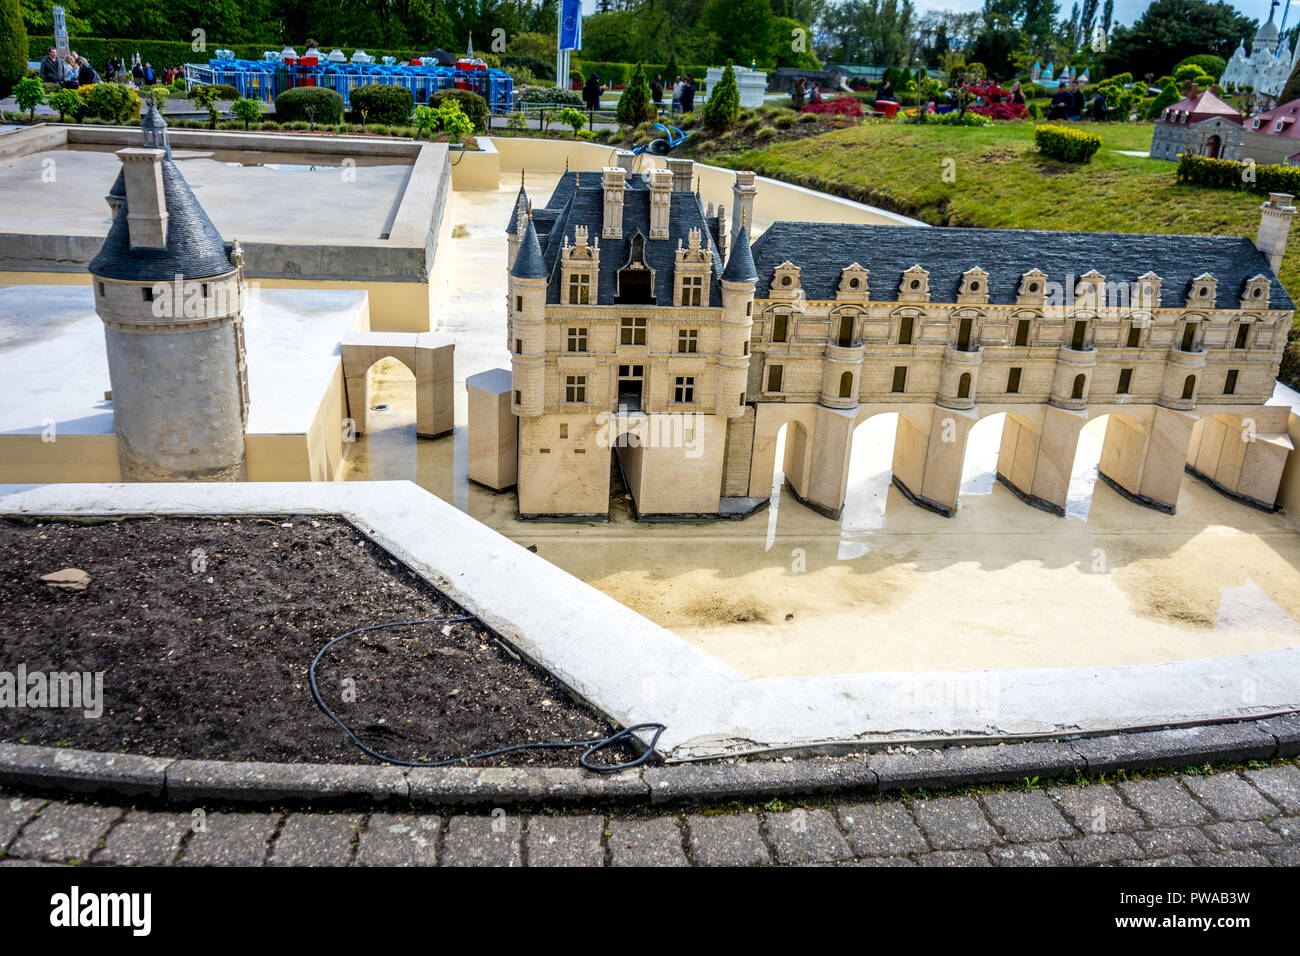 Bruxelles, Belgique - 17 Avril 2017 : Miniatures au parc Mini-Europe - reproduction du château de Chenonceaux, France, Europe Banque D'Images